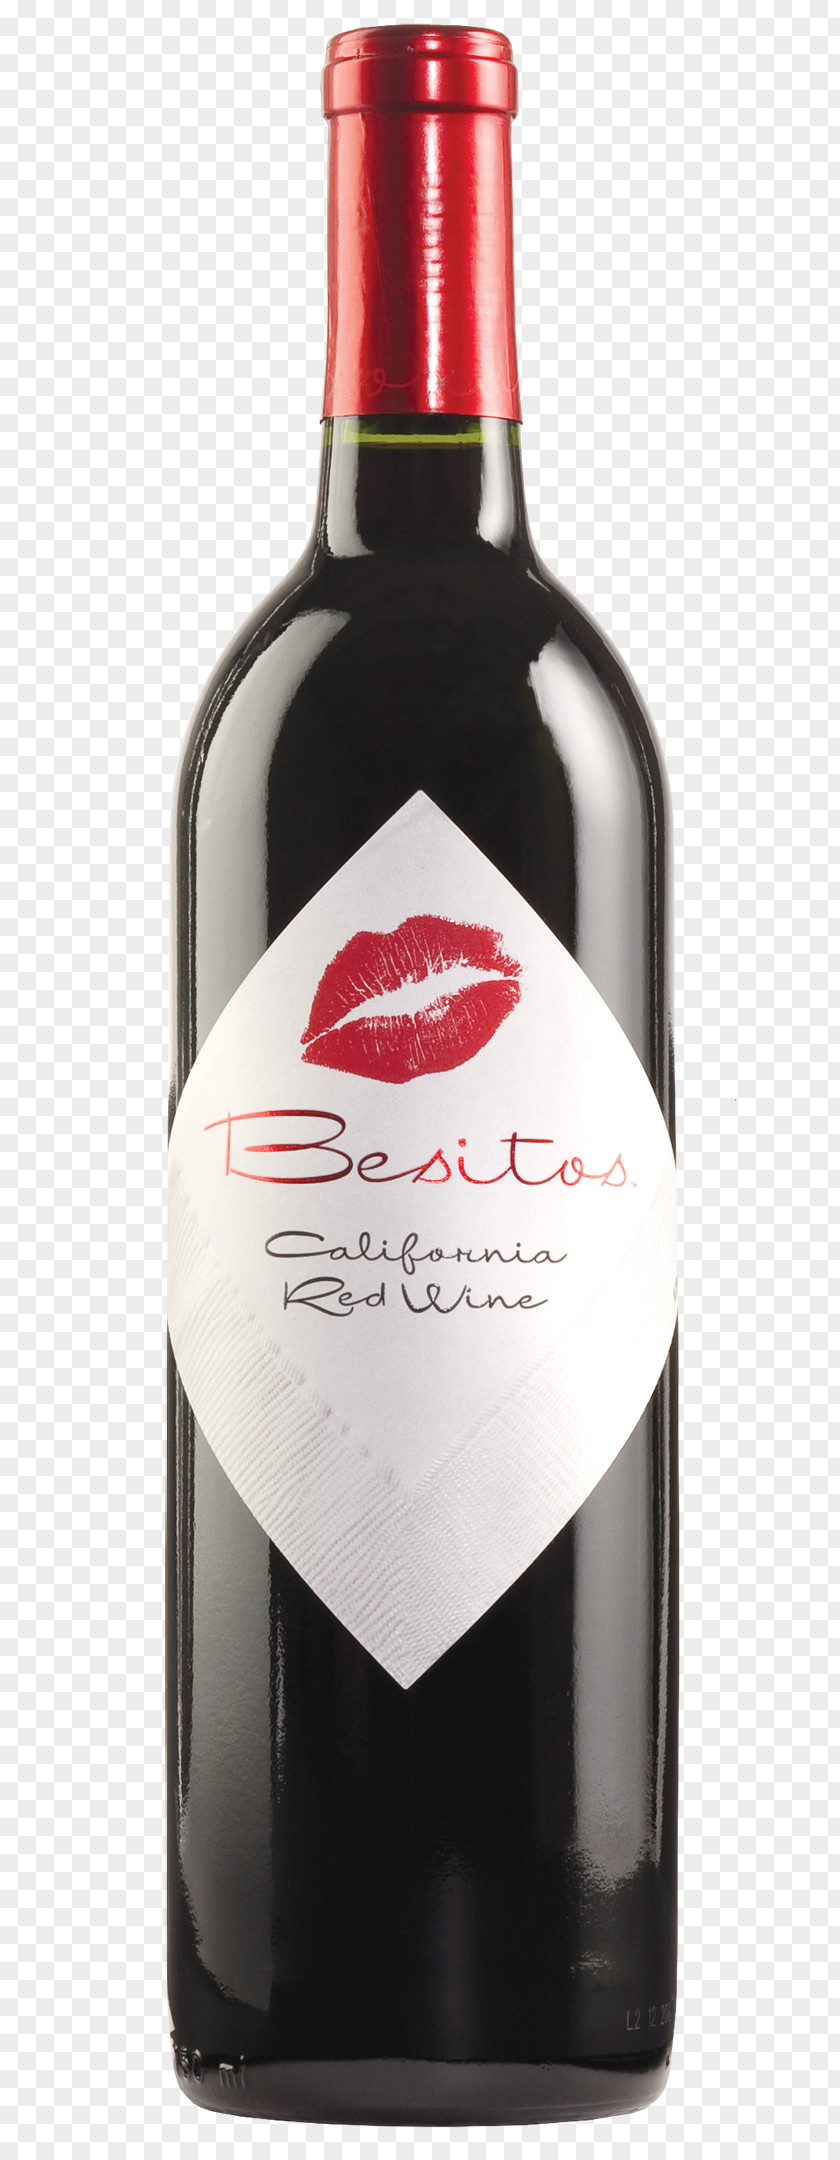 Bottle Image, Free Download Image Of Red Wine Beer Distilled Beverage Muscat PNG